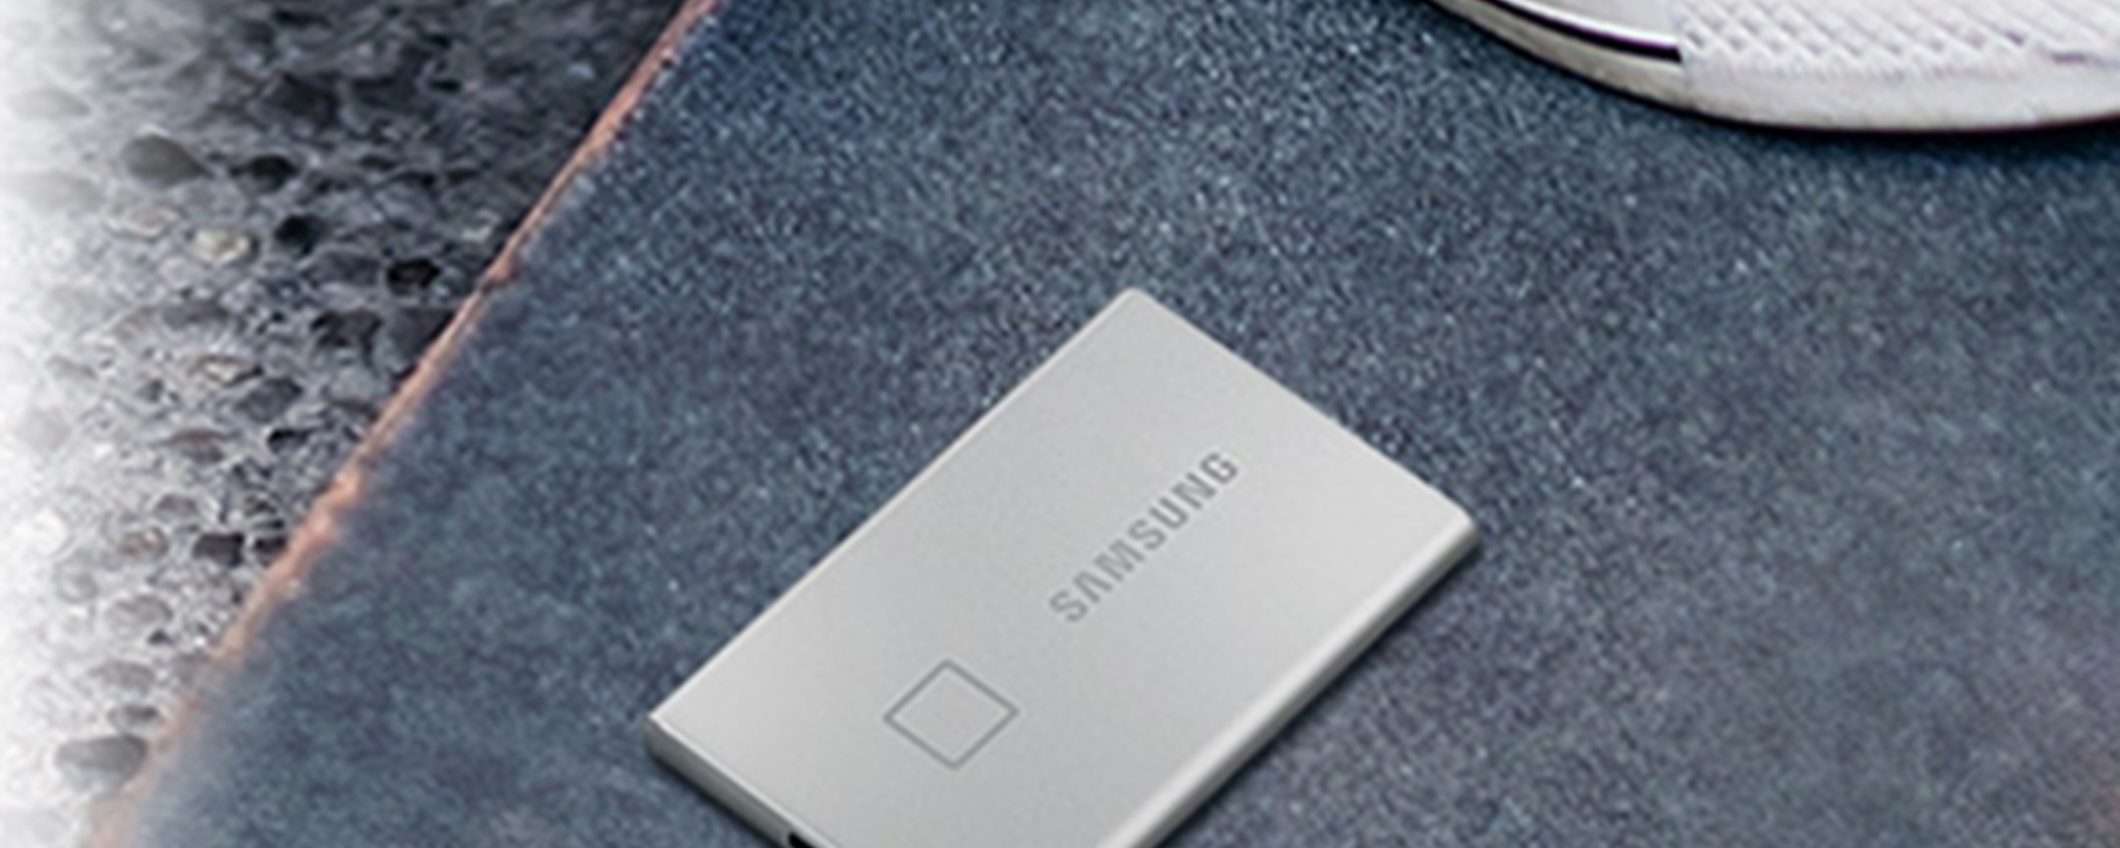 SSD esterno Samsung T7 Touch da 1TB scontato di ben 70€ su Amazon